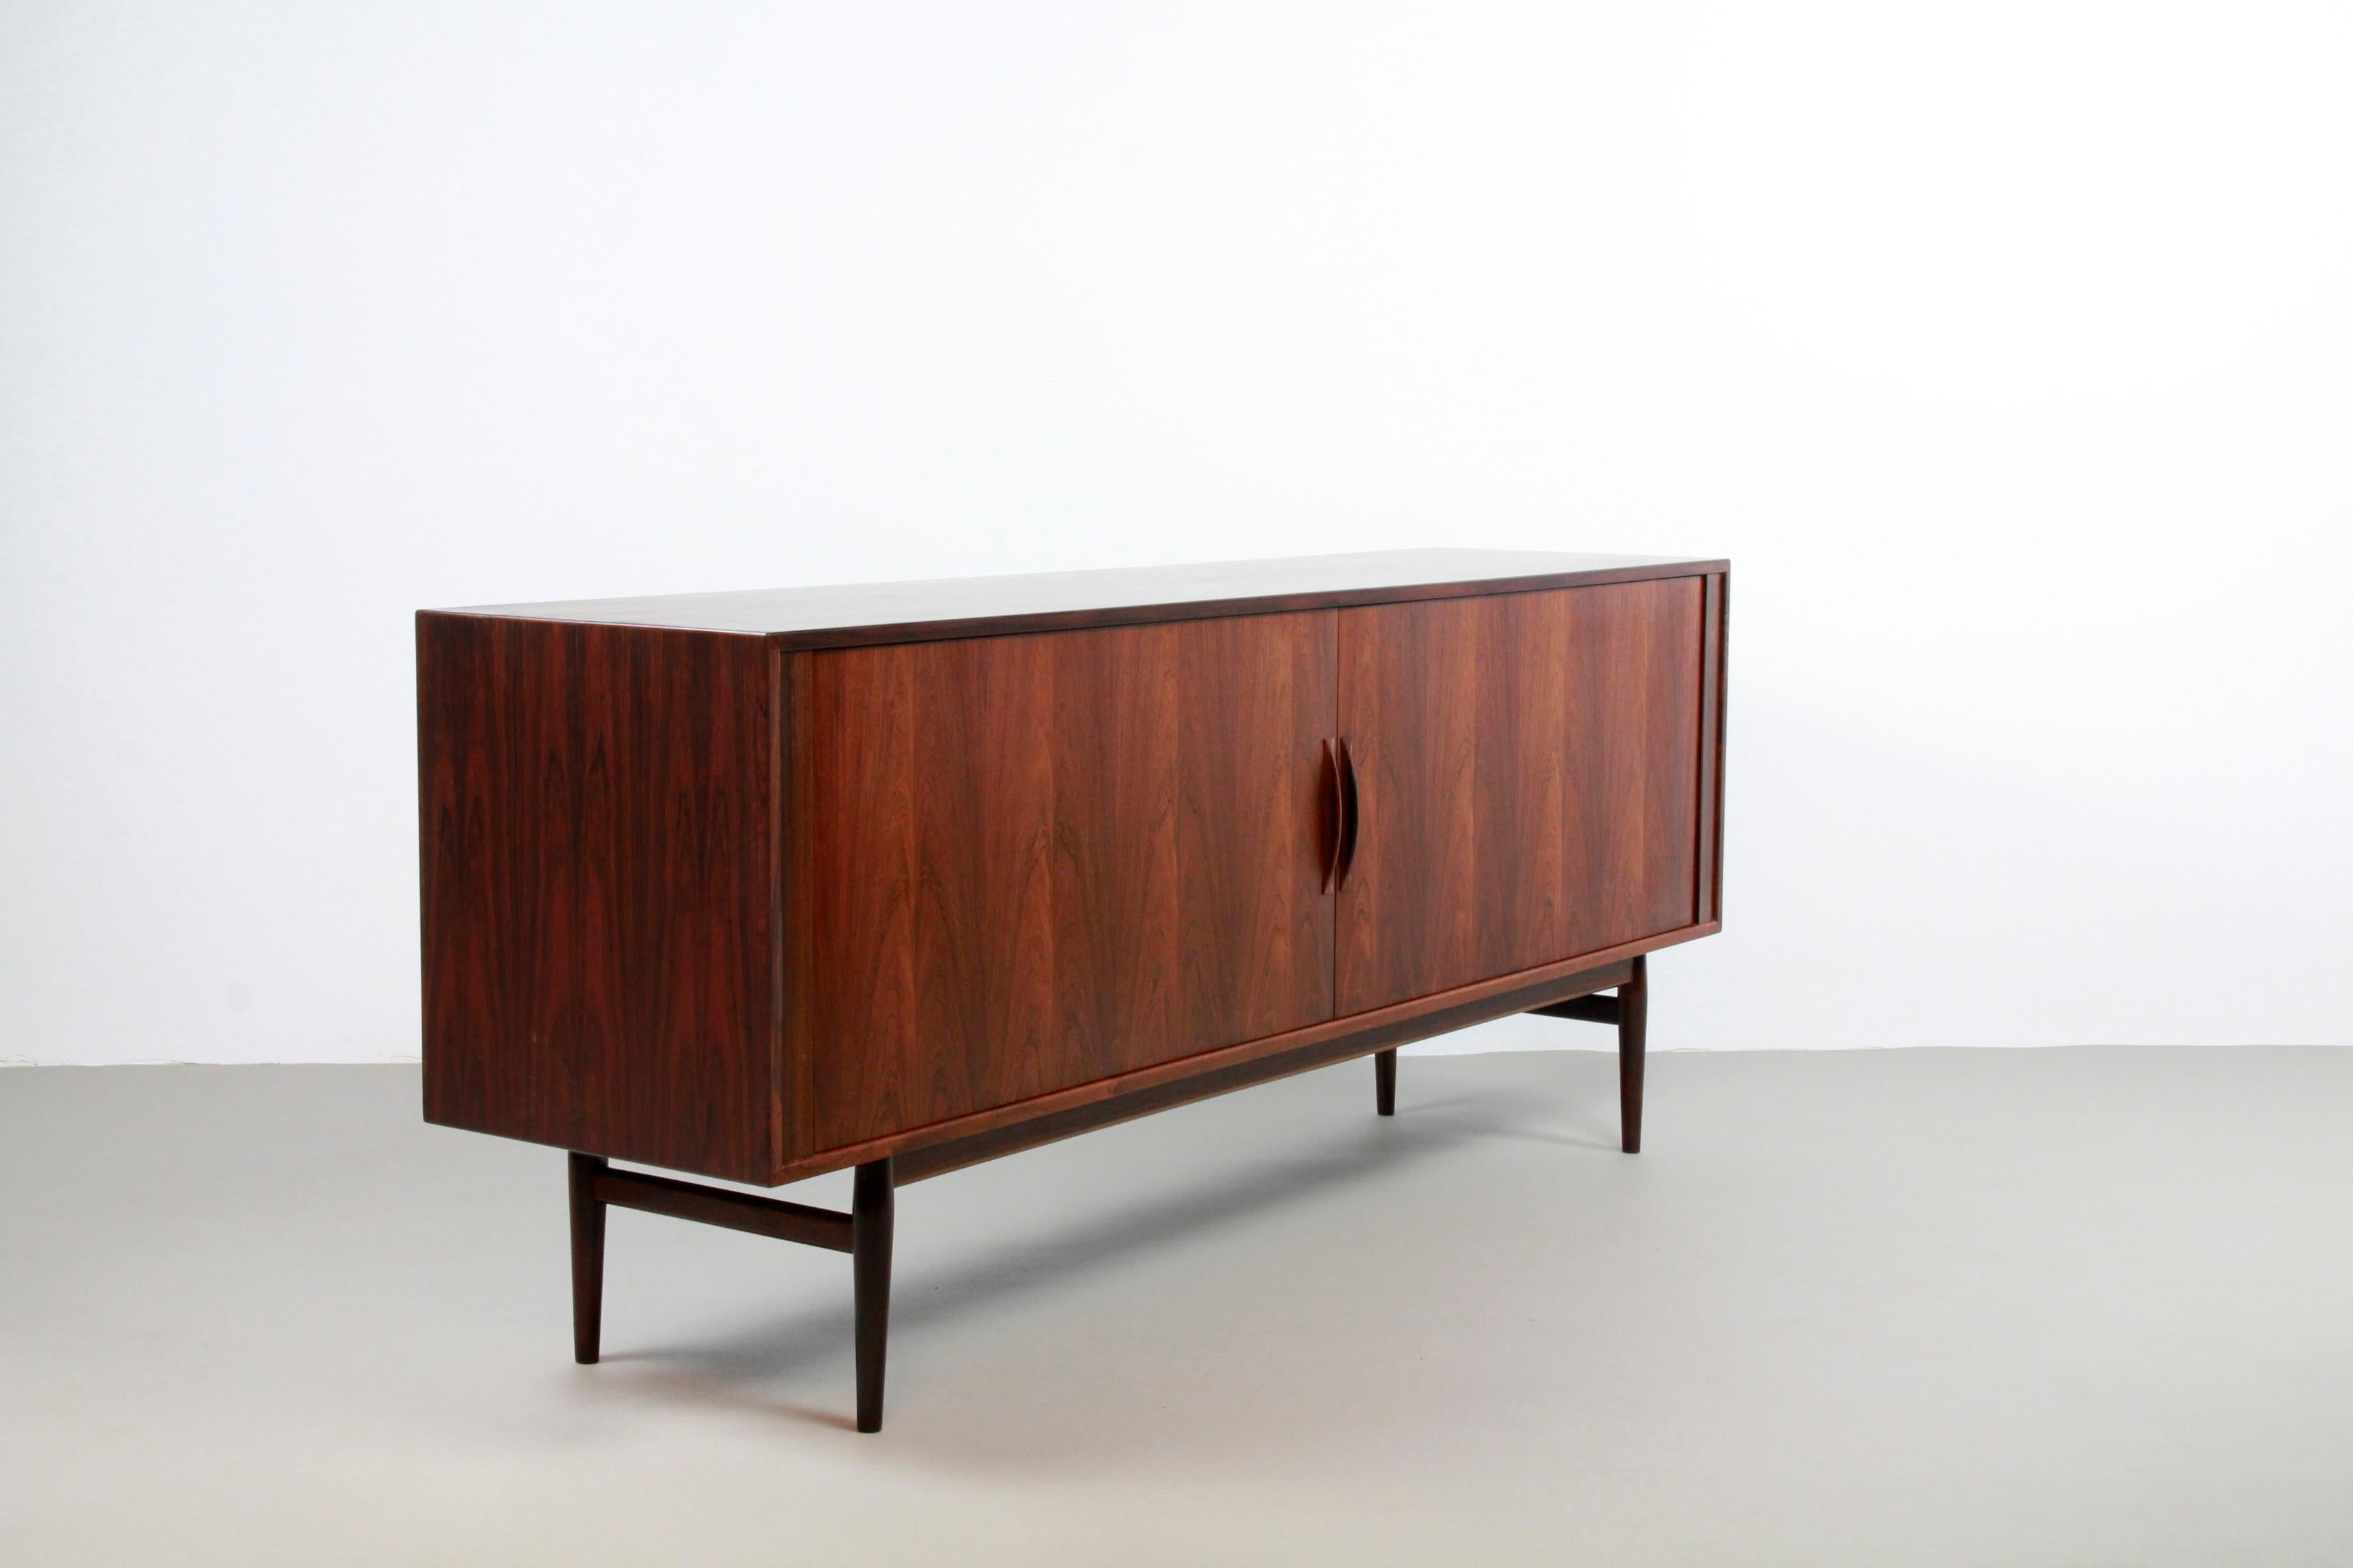 Besonders schönes Sideboard, Modell 37, entworfen vom dänischen Designer Arne Vodder für Sibast, Dänemark in den 60er Jahren. Das Sideboard ist aus tropischem Hartholz gefertigt und hat ein sehr schönes Muster in der Maserung. Das Sideboard hat zwei